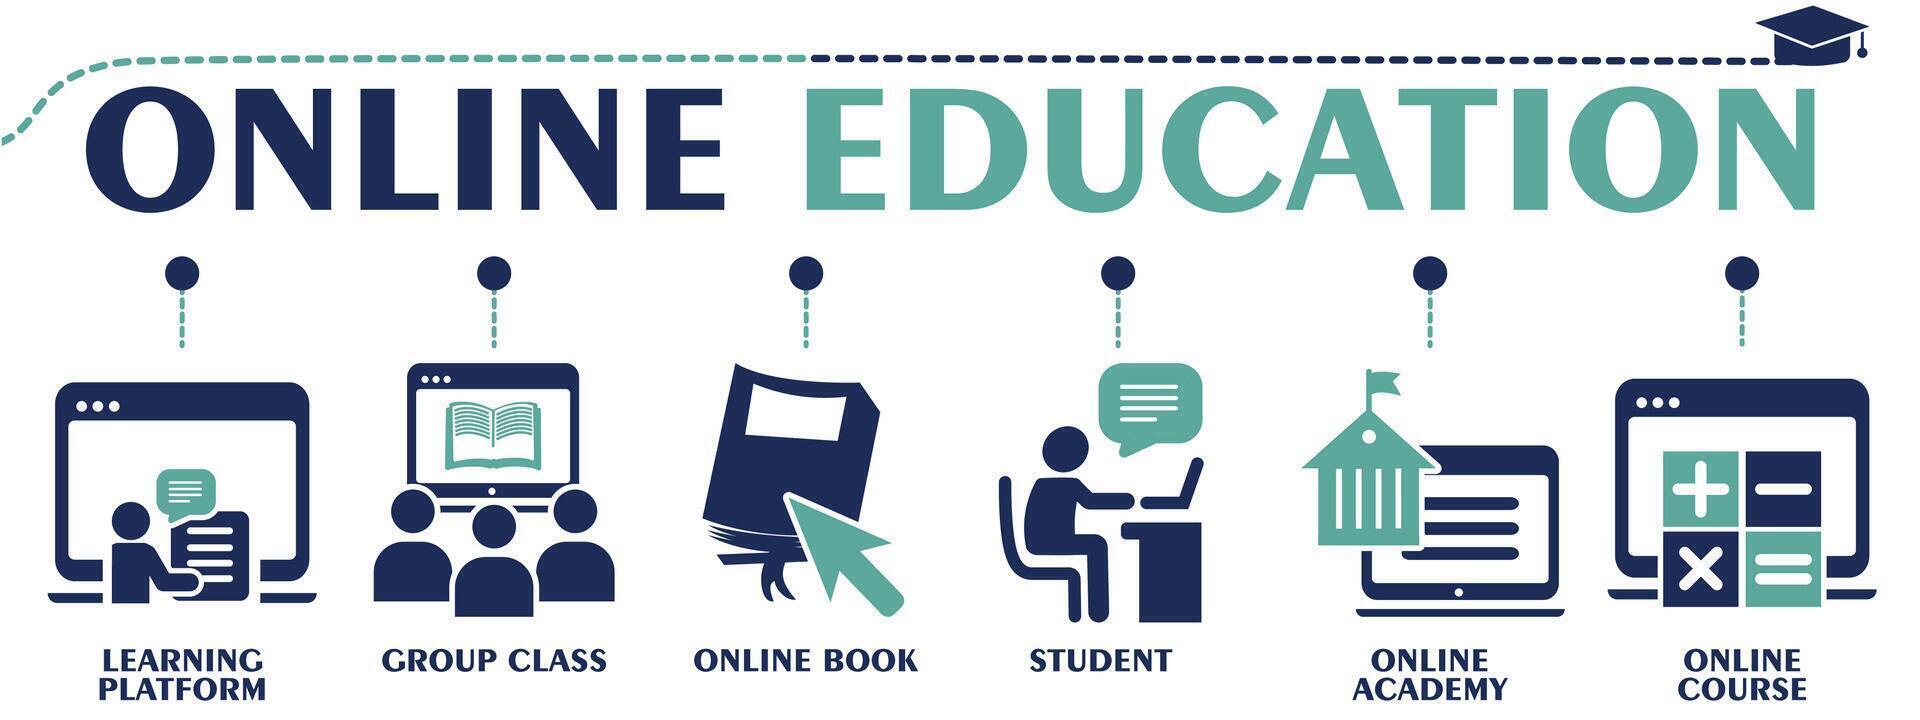 en línea educación bandera web sólido iconos vector ilustración concepto con un icono de aprendizaje plataforma, grupo clase, en línea libro, academia, estudiante y curso.